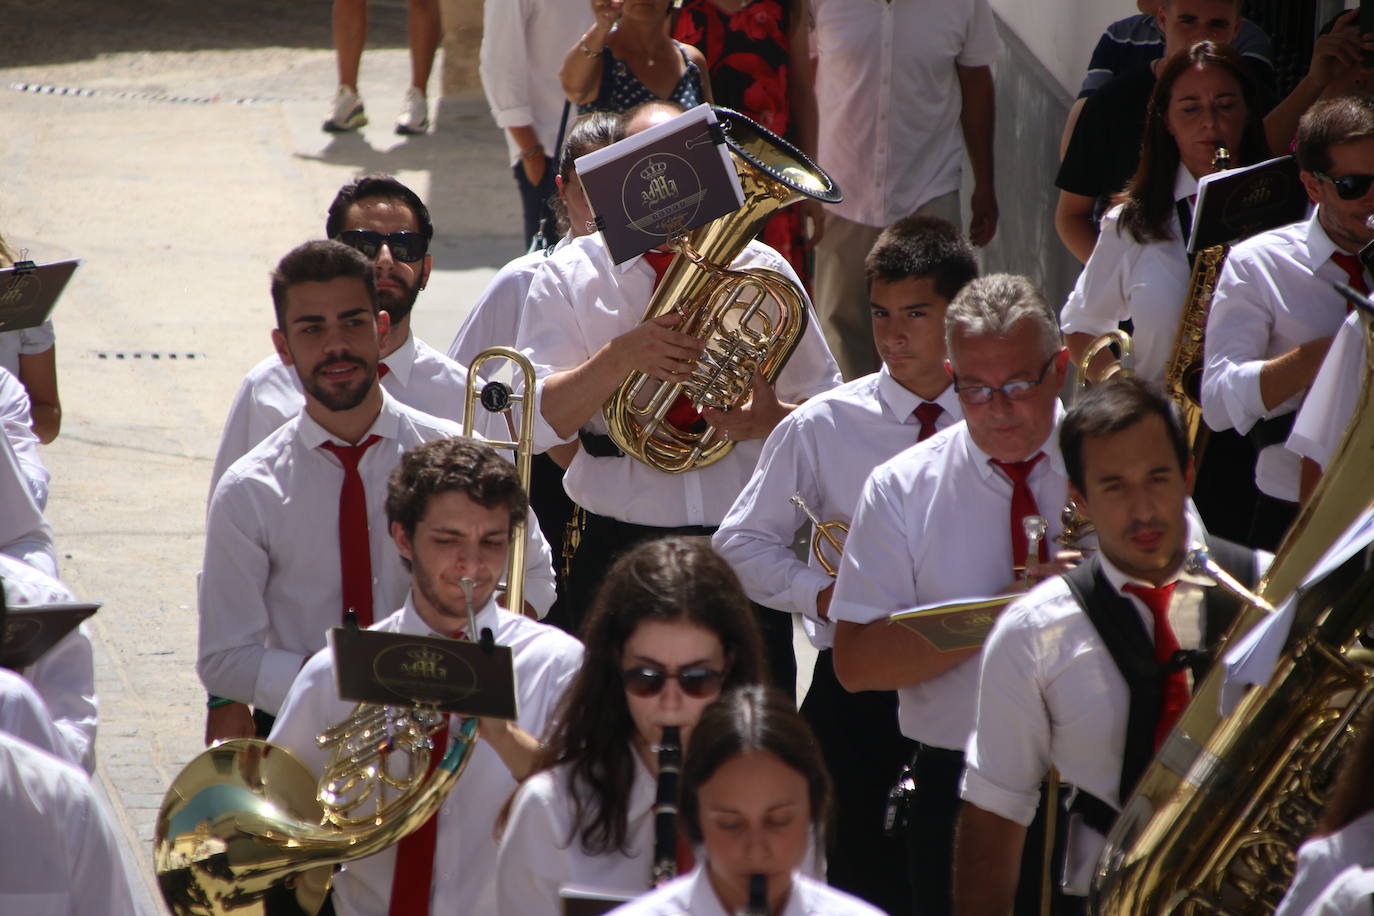 Fotos: Jerez celebra la procesión en honor de su patrón, San Bartolomé, y la Virgen del Reposo